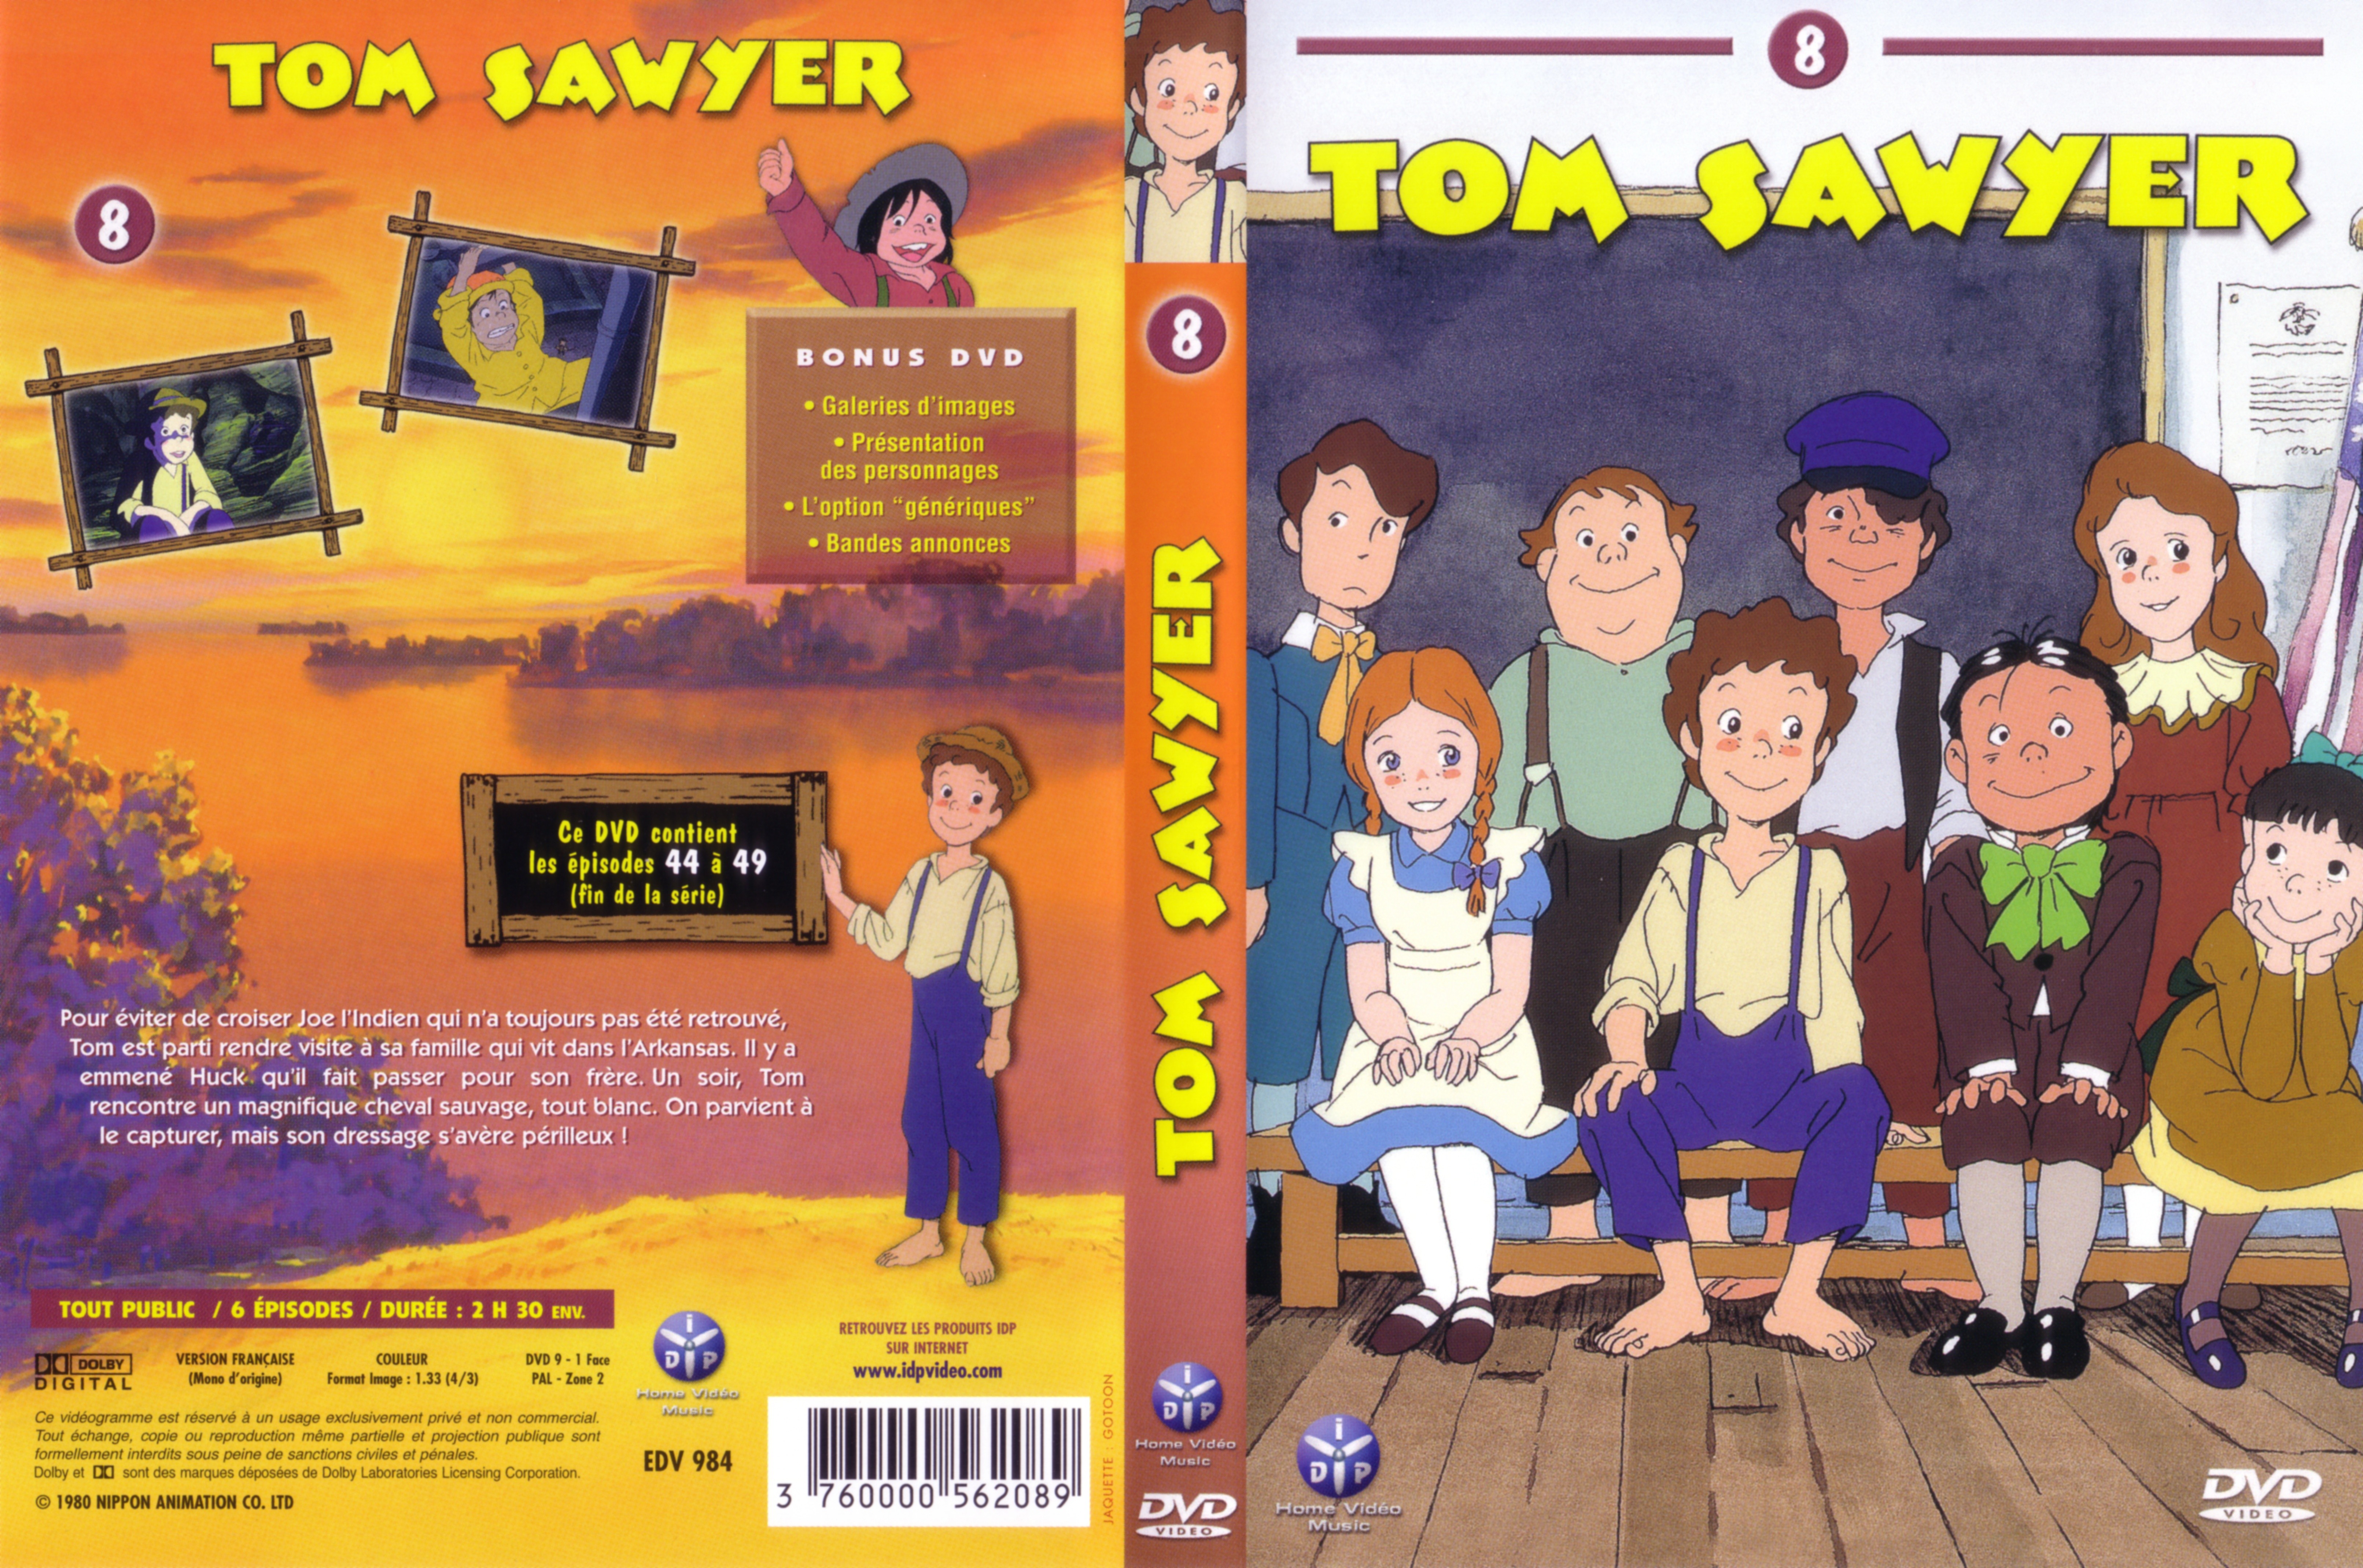 Jaquette DVD Tom Sawyer vol 8 v2